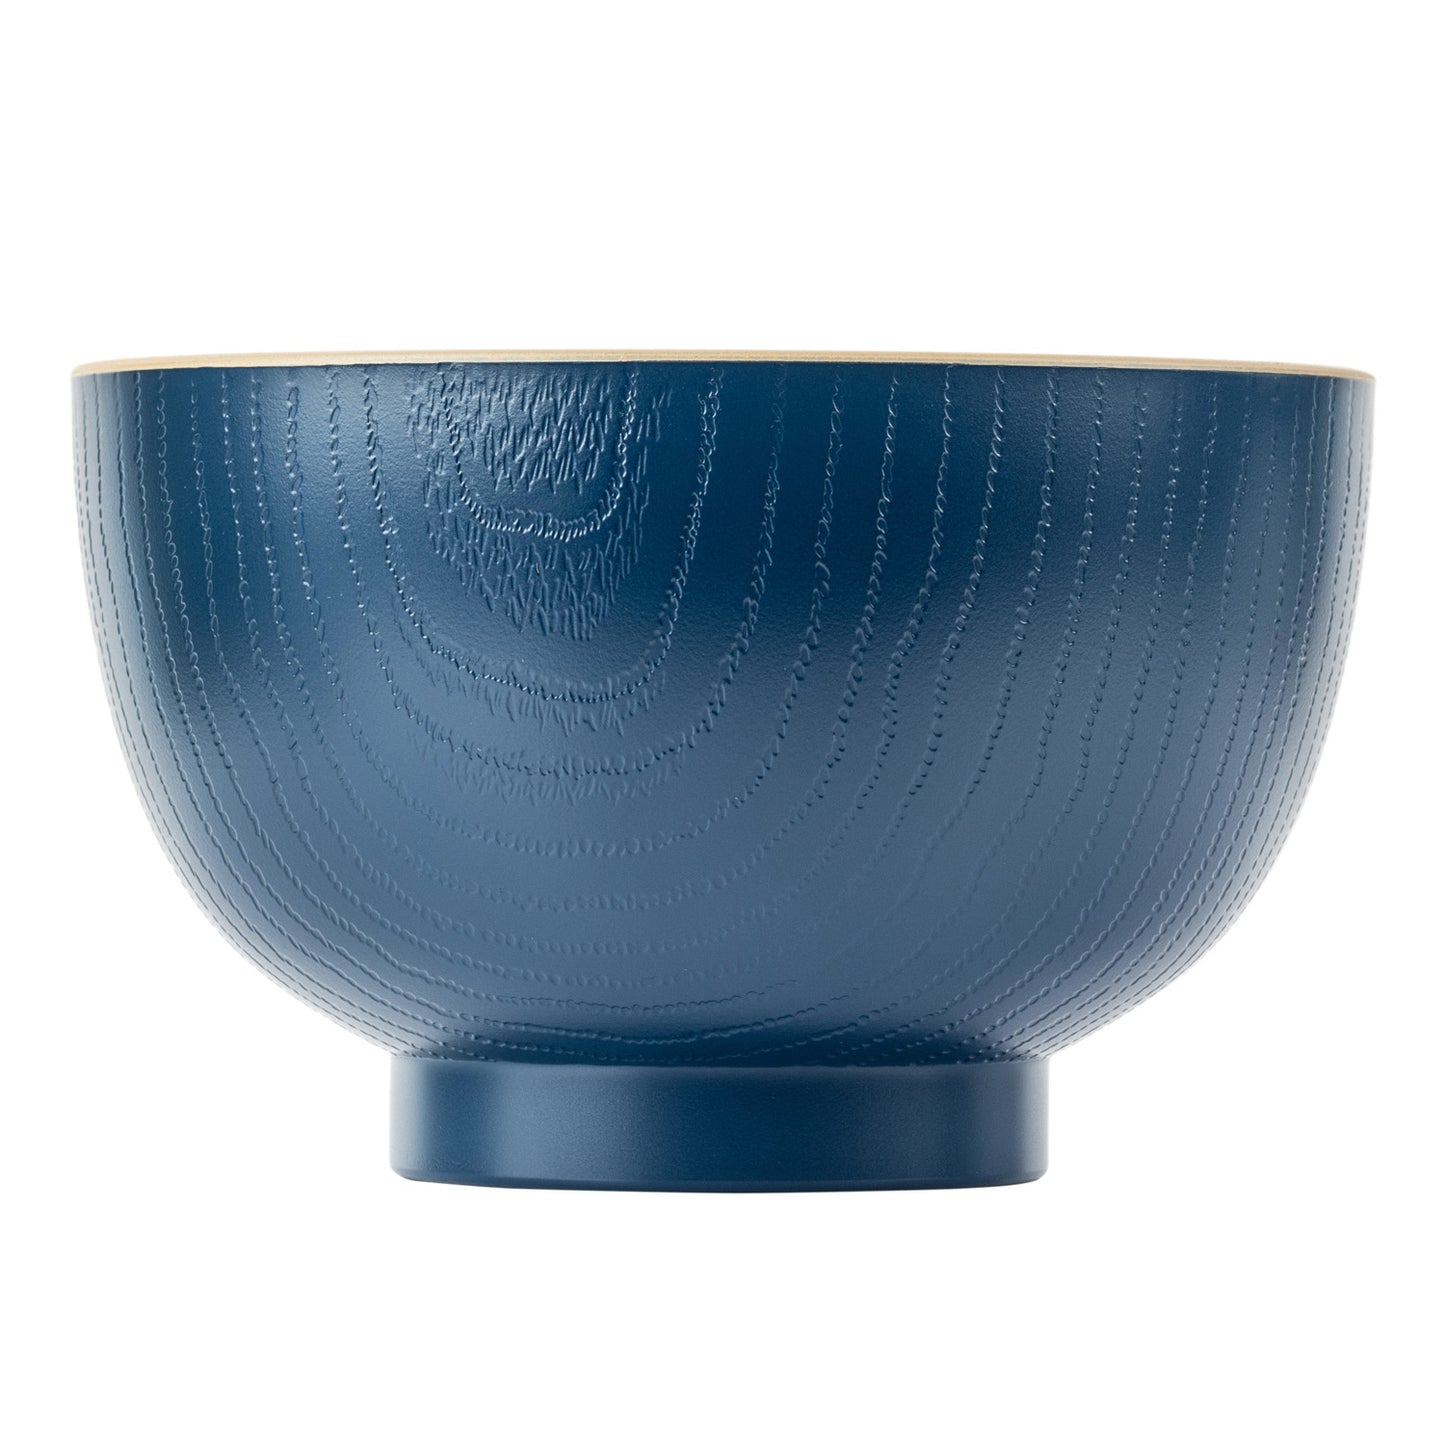 Indigo Blue Japanese Lacquer Bowl side